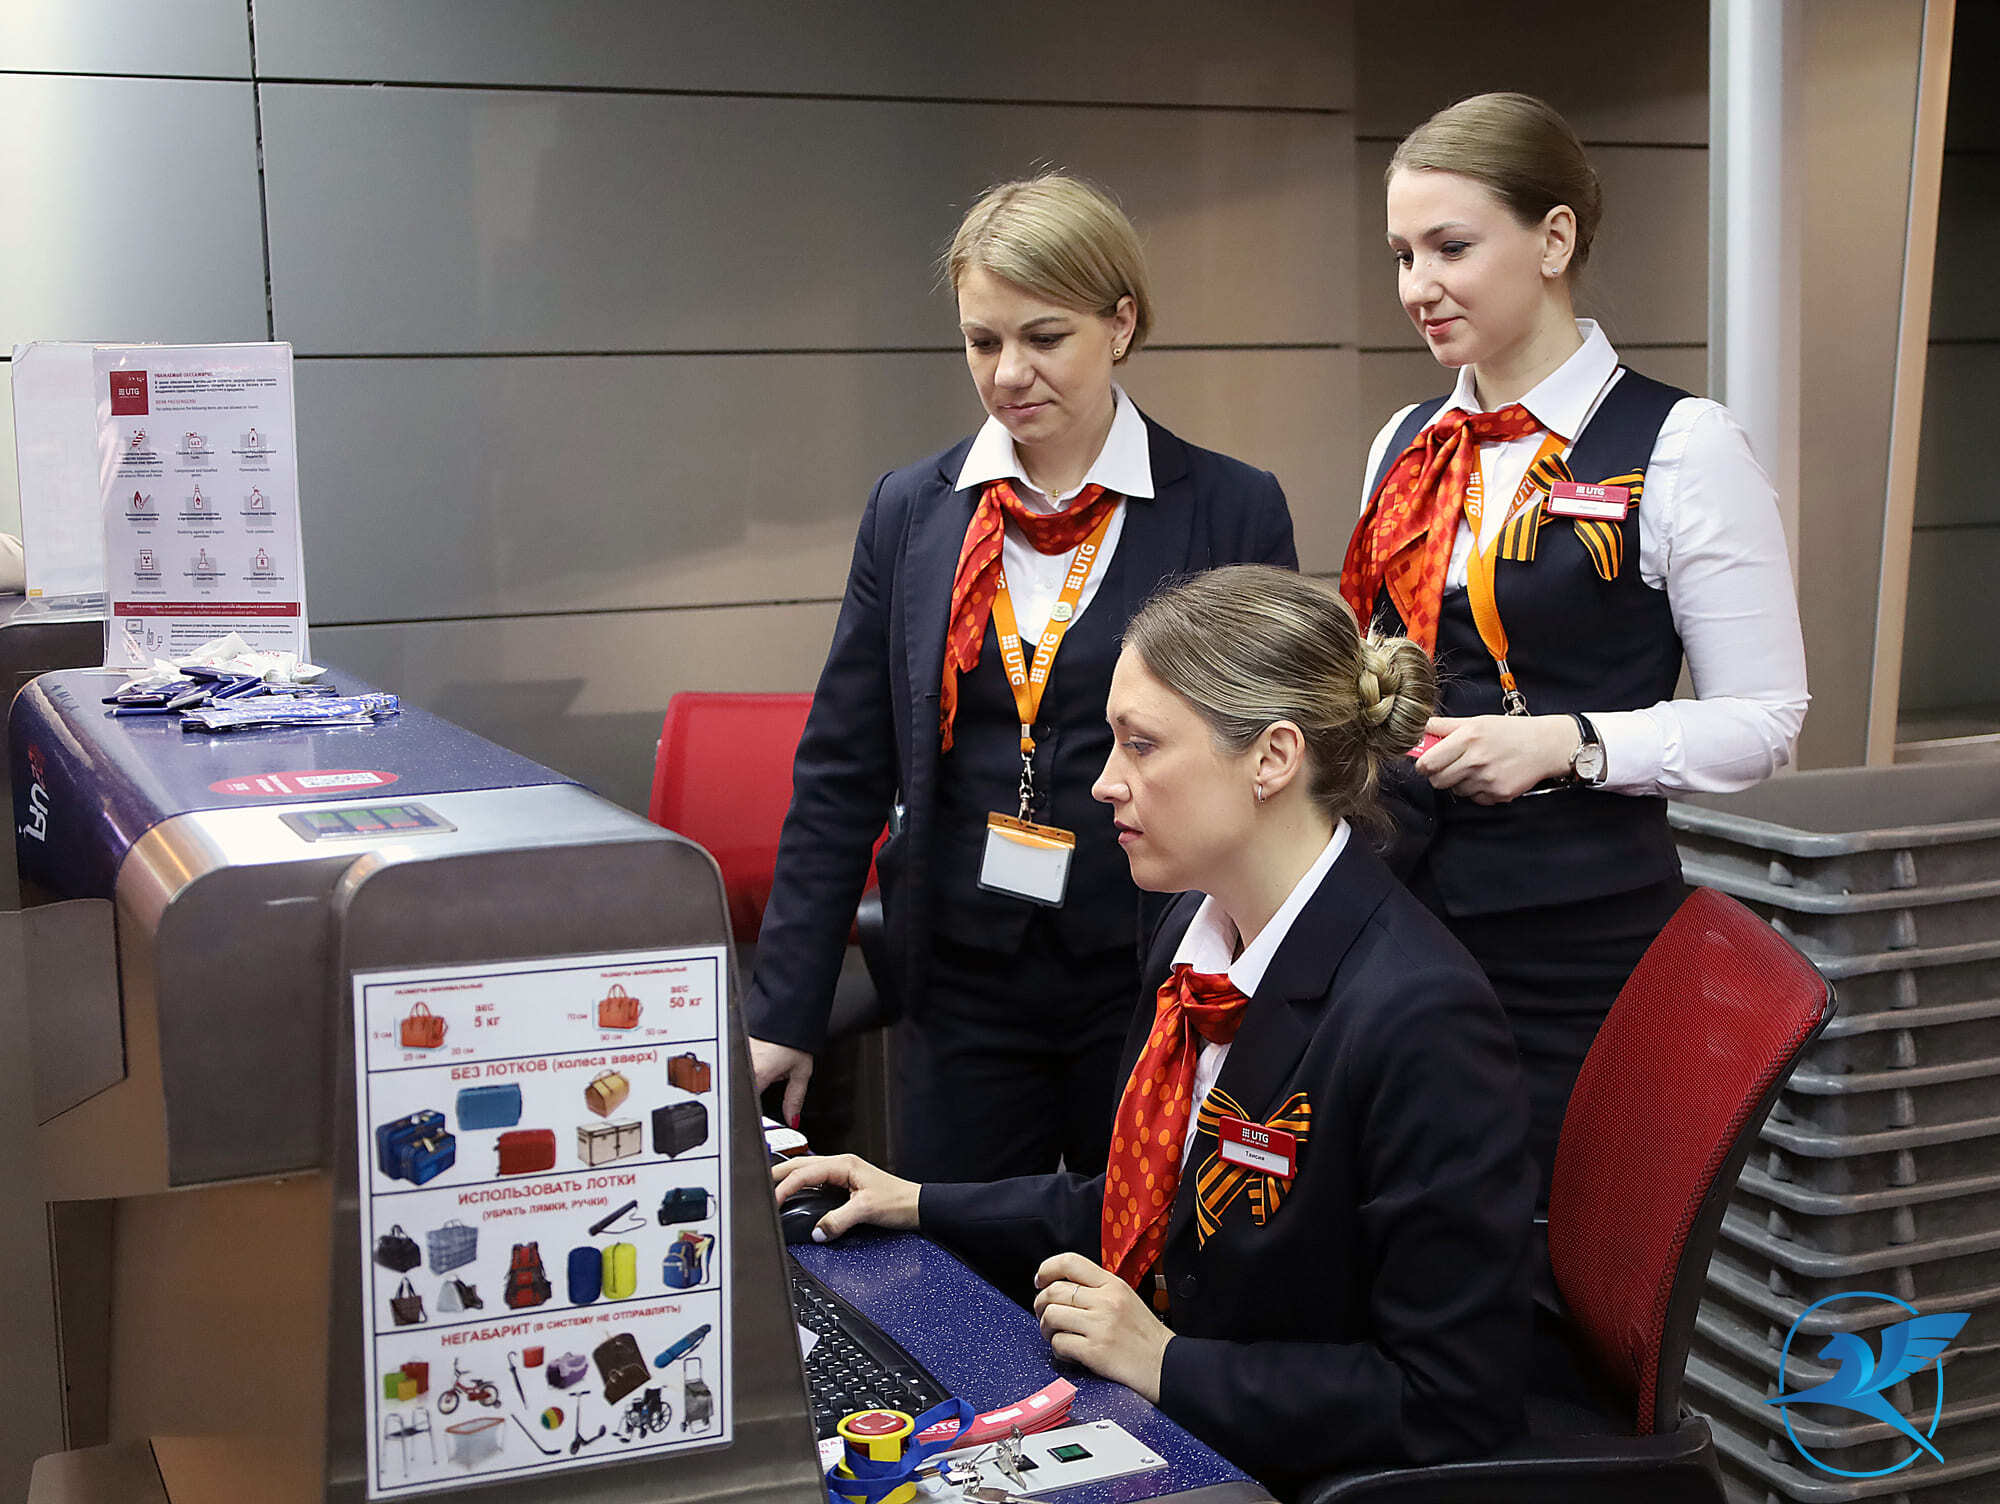 Авиакомпания Aero Nomad Airlines расширяет маршрутную сеть из аэропорта Внуково | Международный аэропорт Внуково